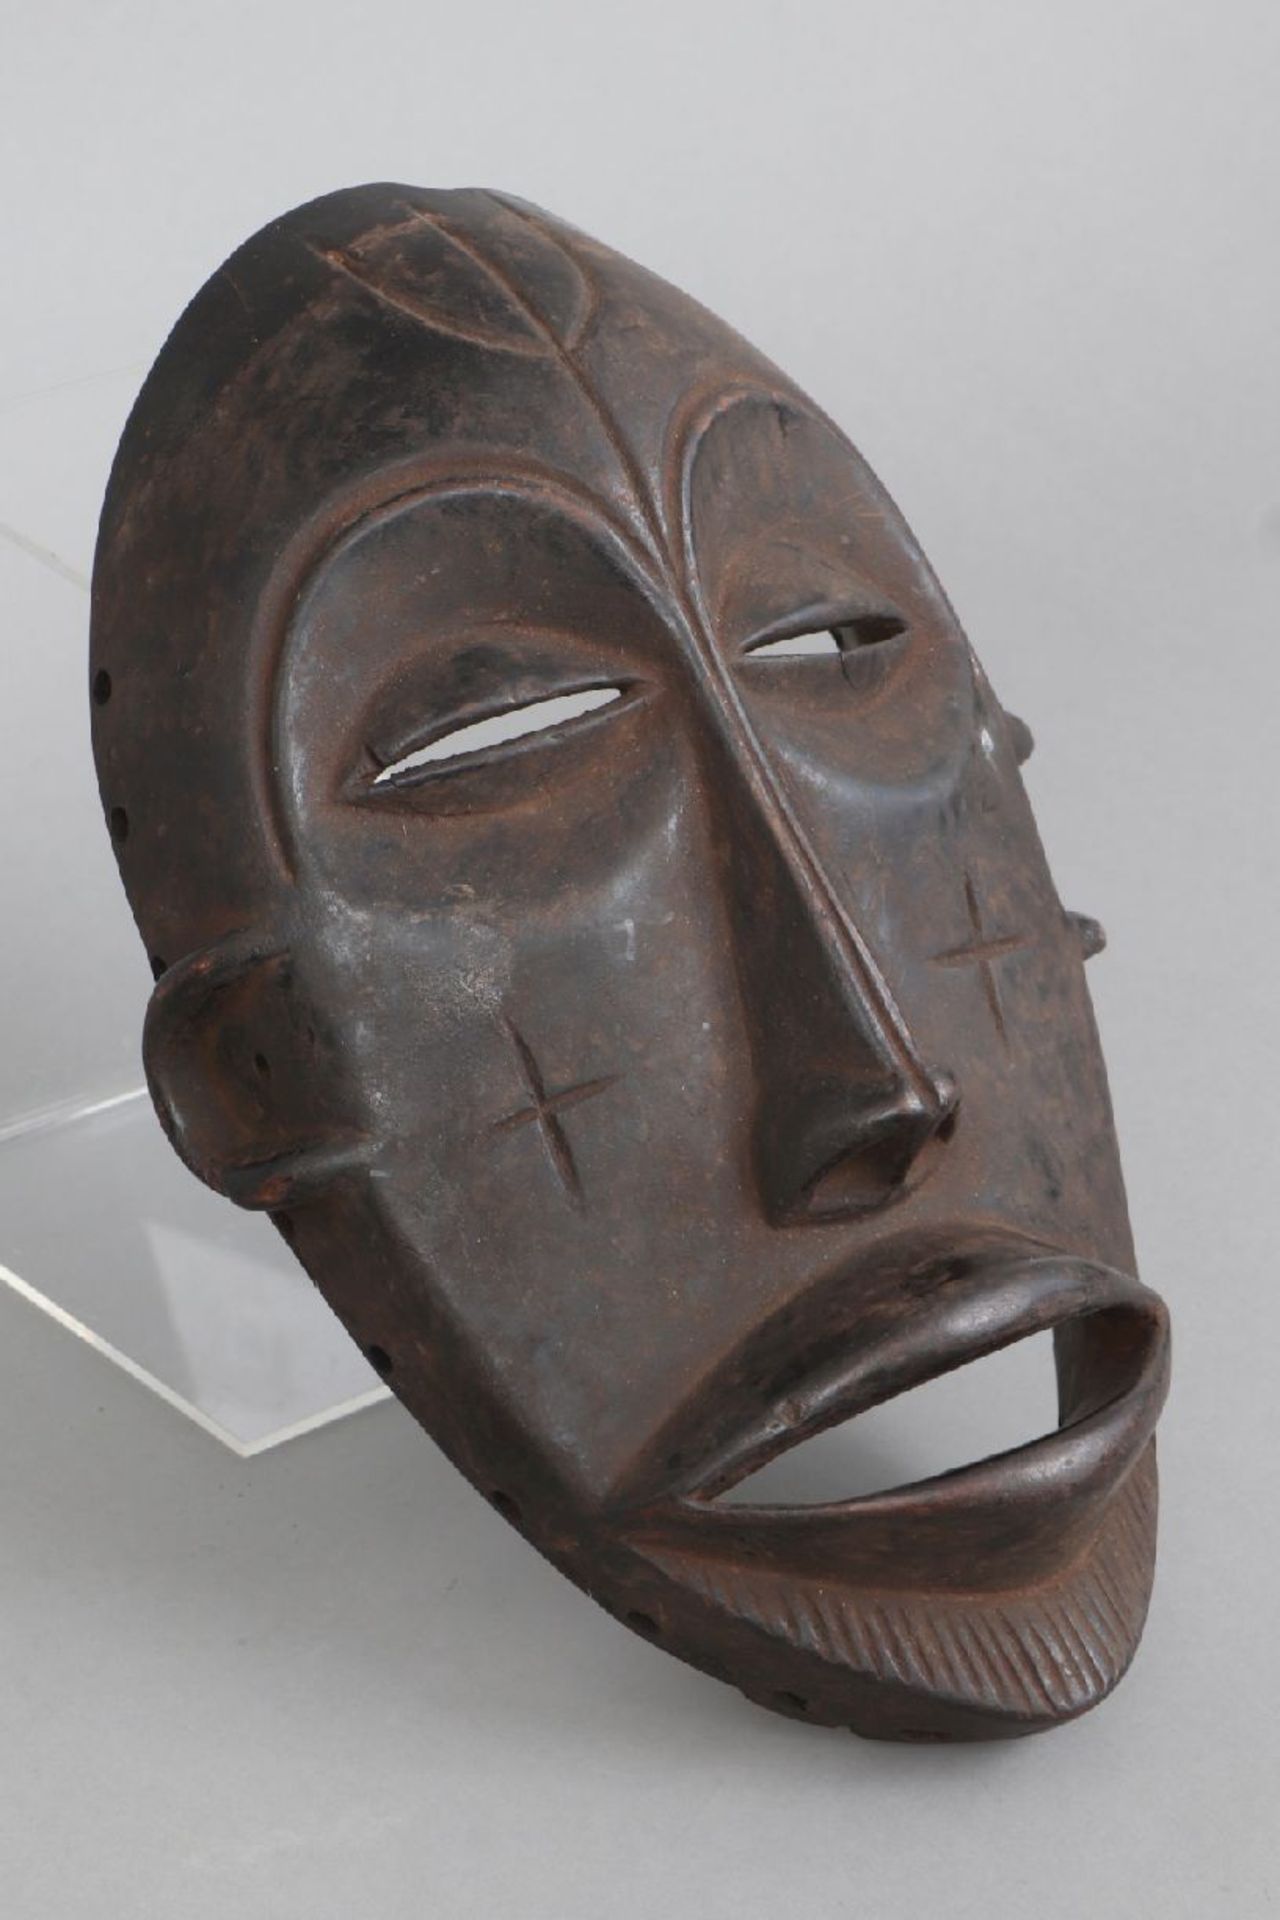 Afrikanische Tanzmaske der Fang, Gabundunkel patiniertes Hartholz, ovales Gesicht mit langer Nase, - Image 2 of 3